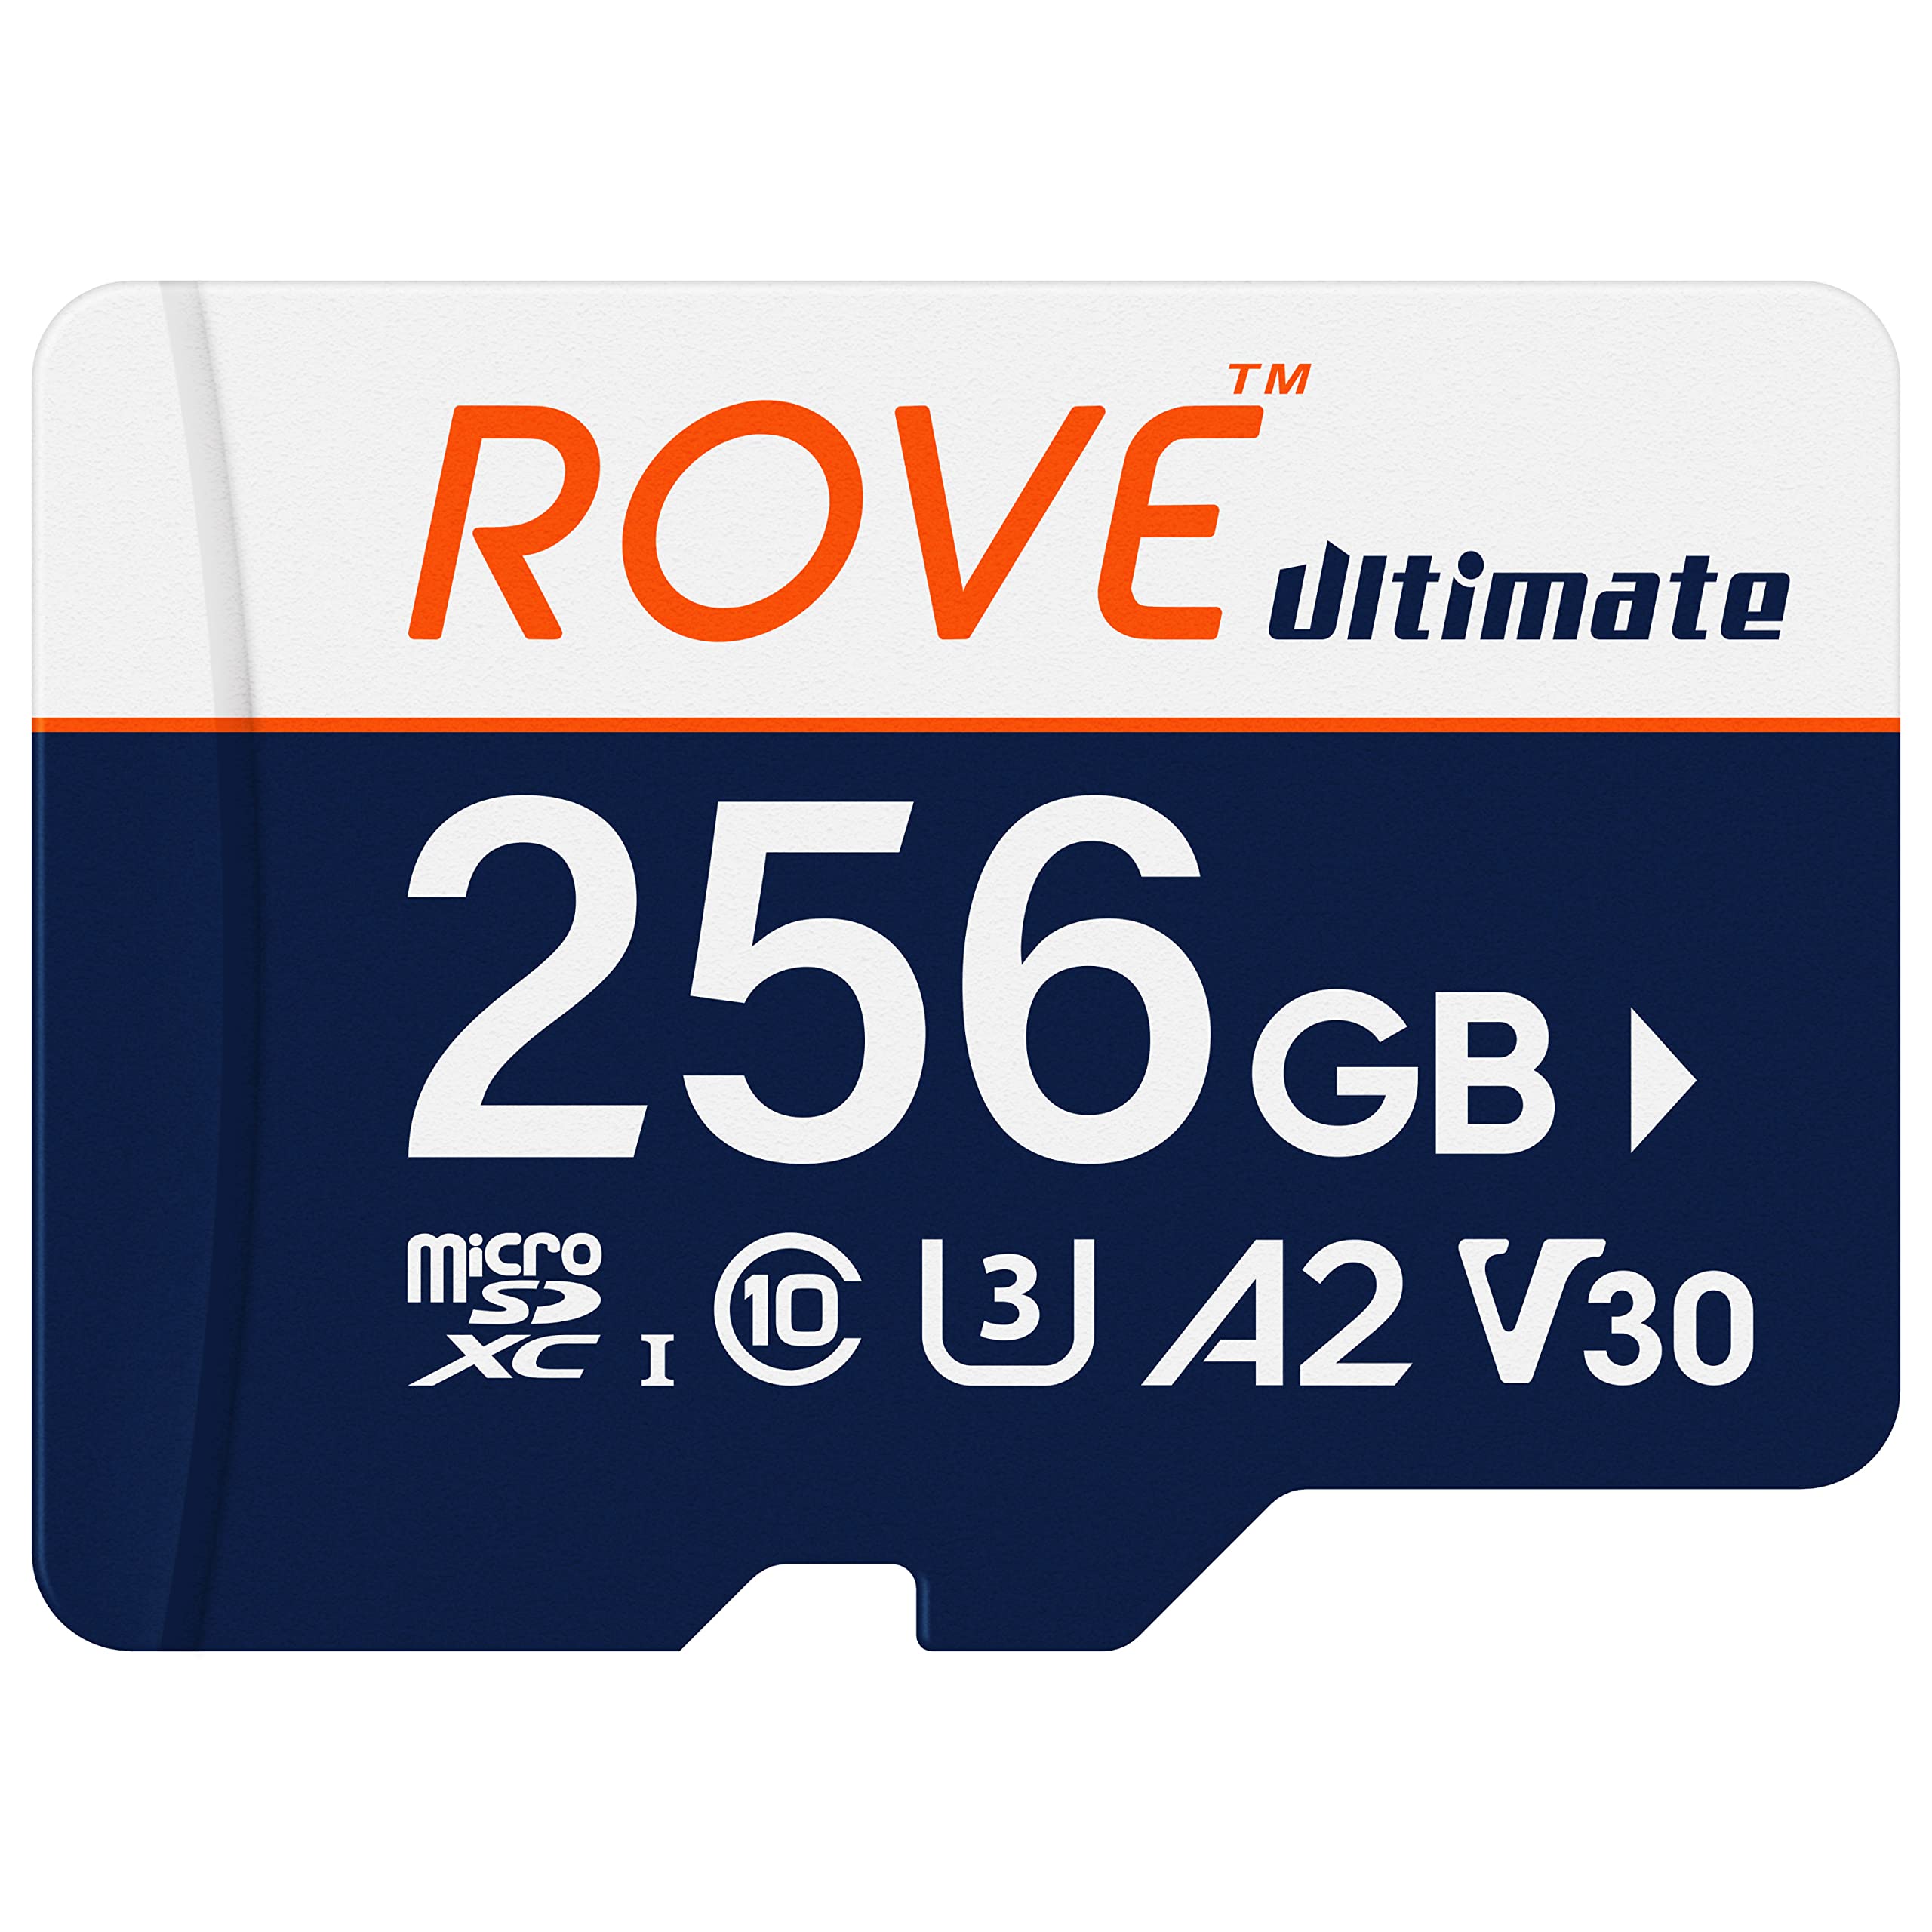 ROVE R2-4K Dash Cam | Hardwire Kit | 256GB Micro SD Card